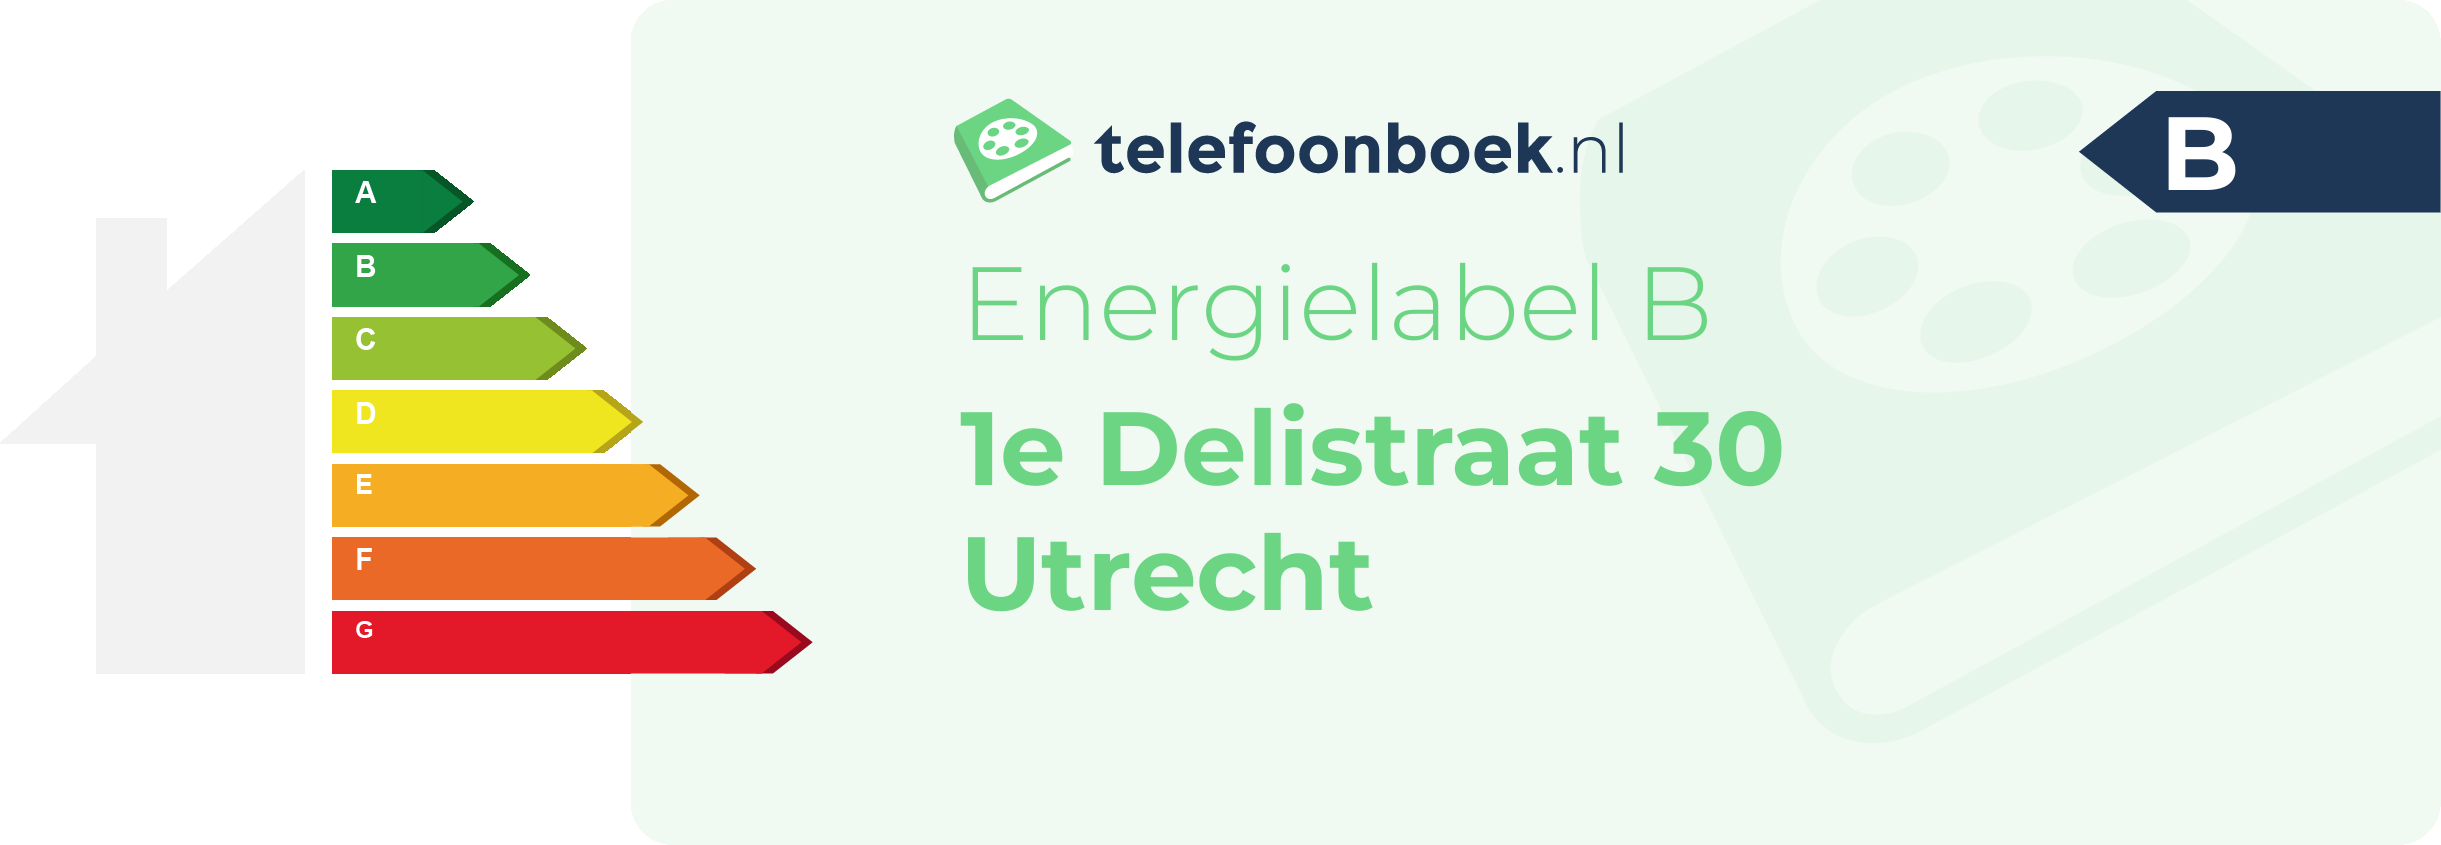 Energielabel 1e Delistraat 30 Utrecht